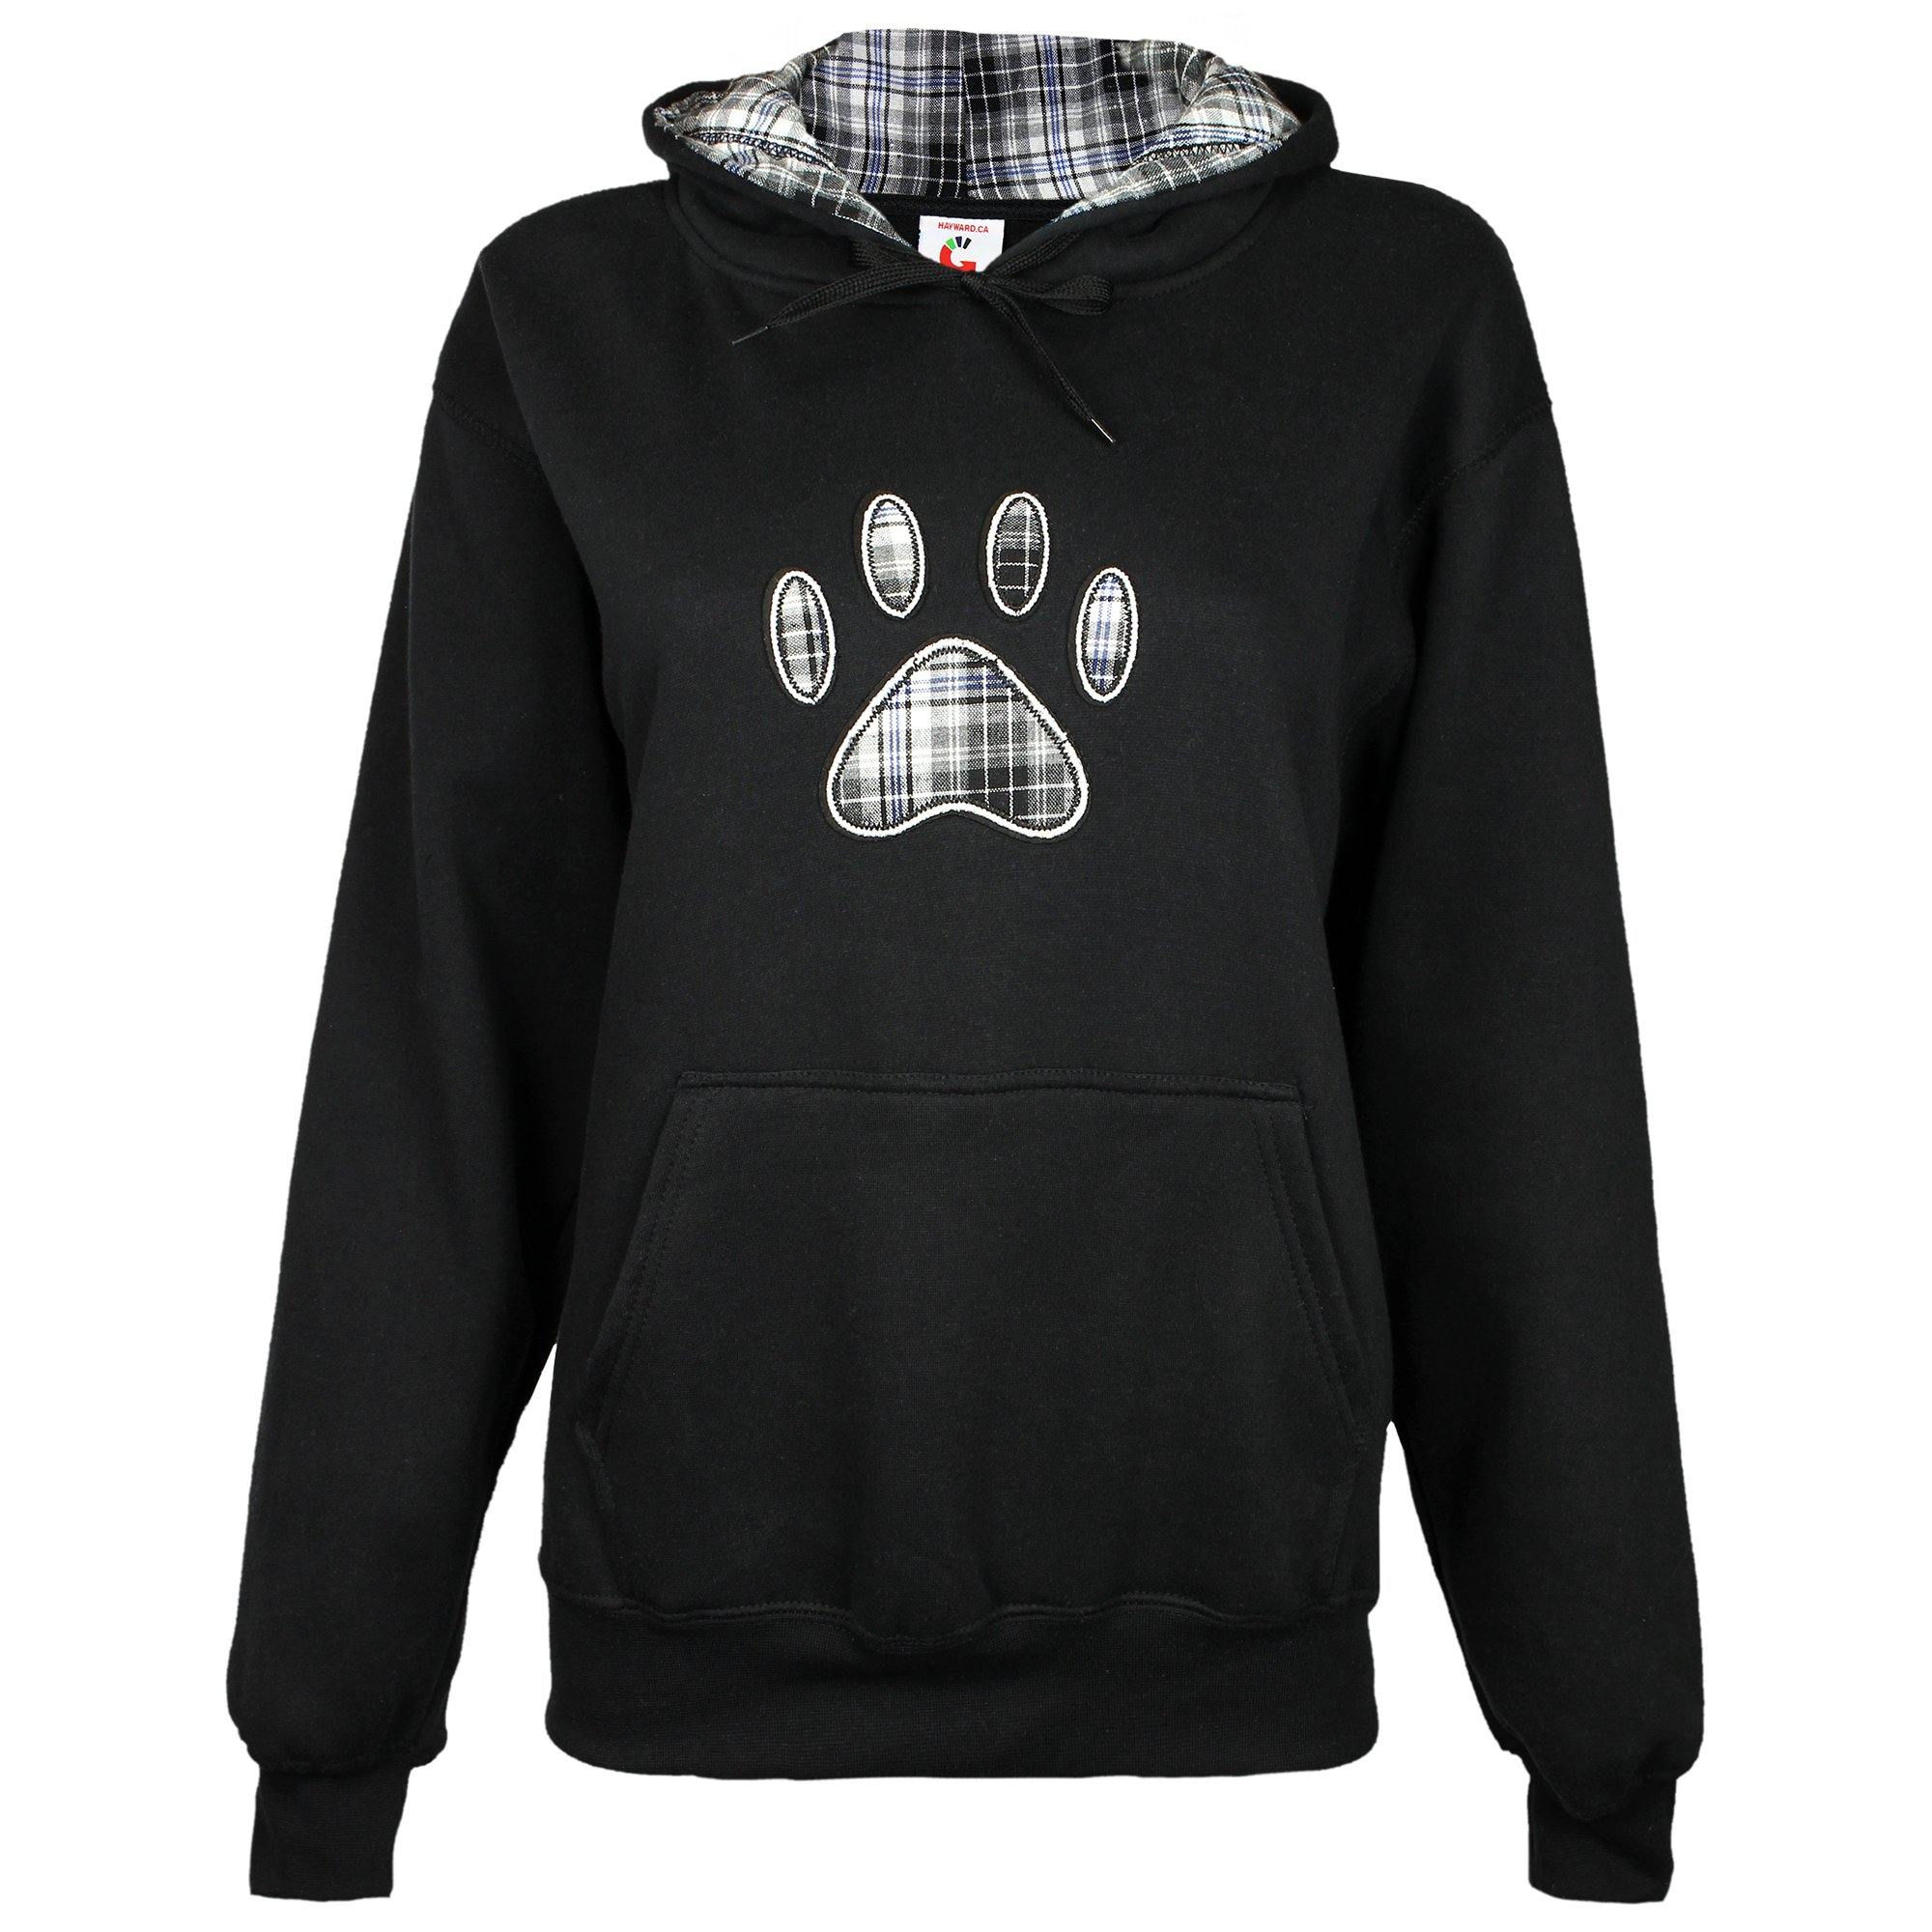 Plaid Paw Hooded Sweatshirt - Black - XXL